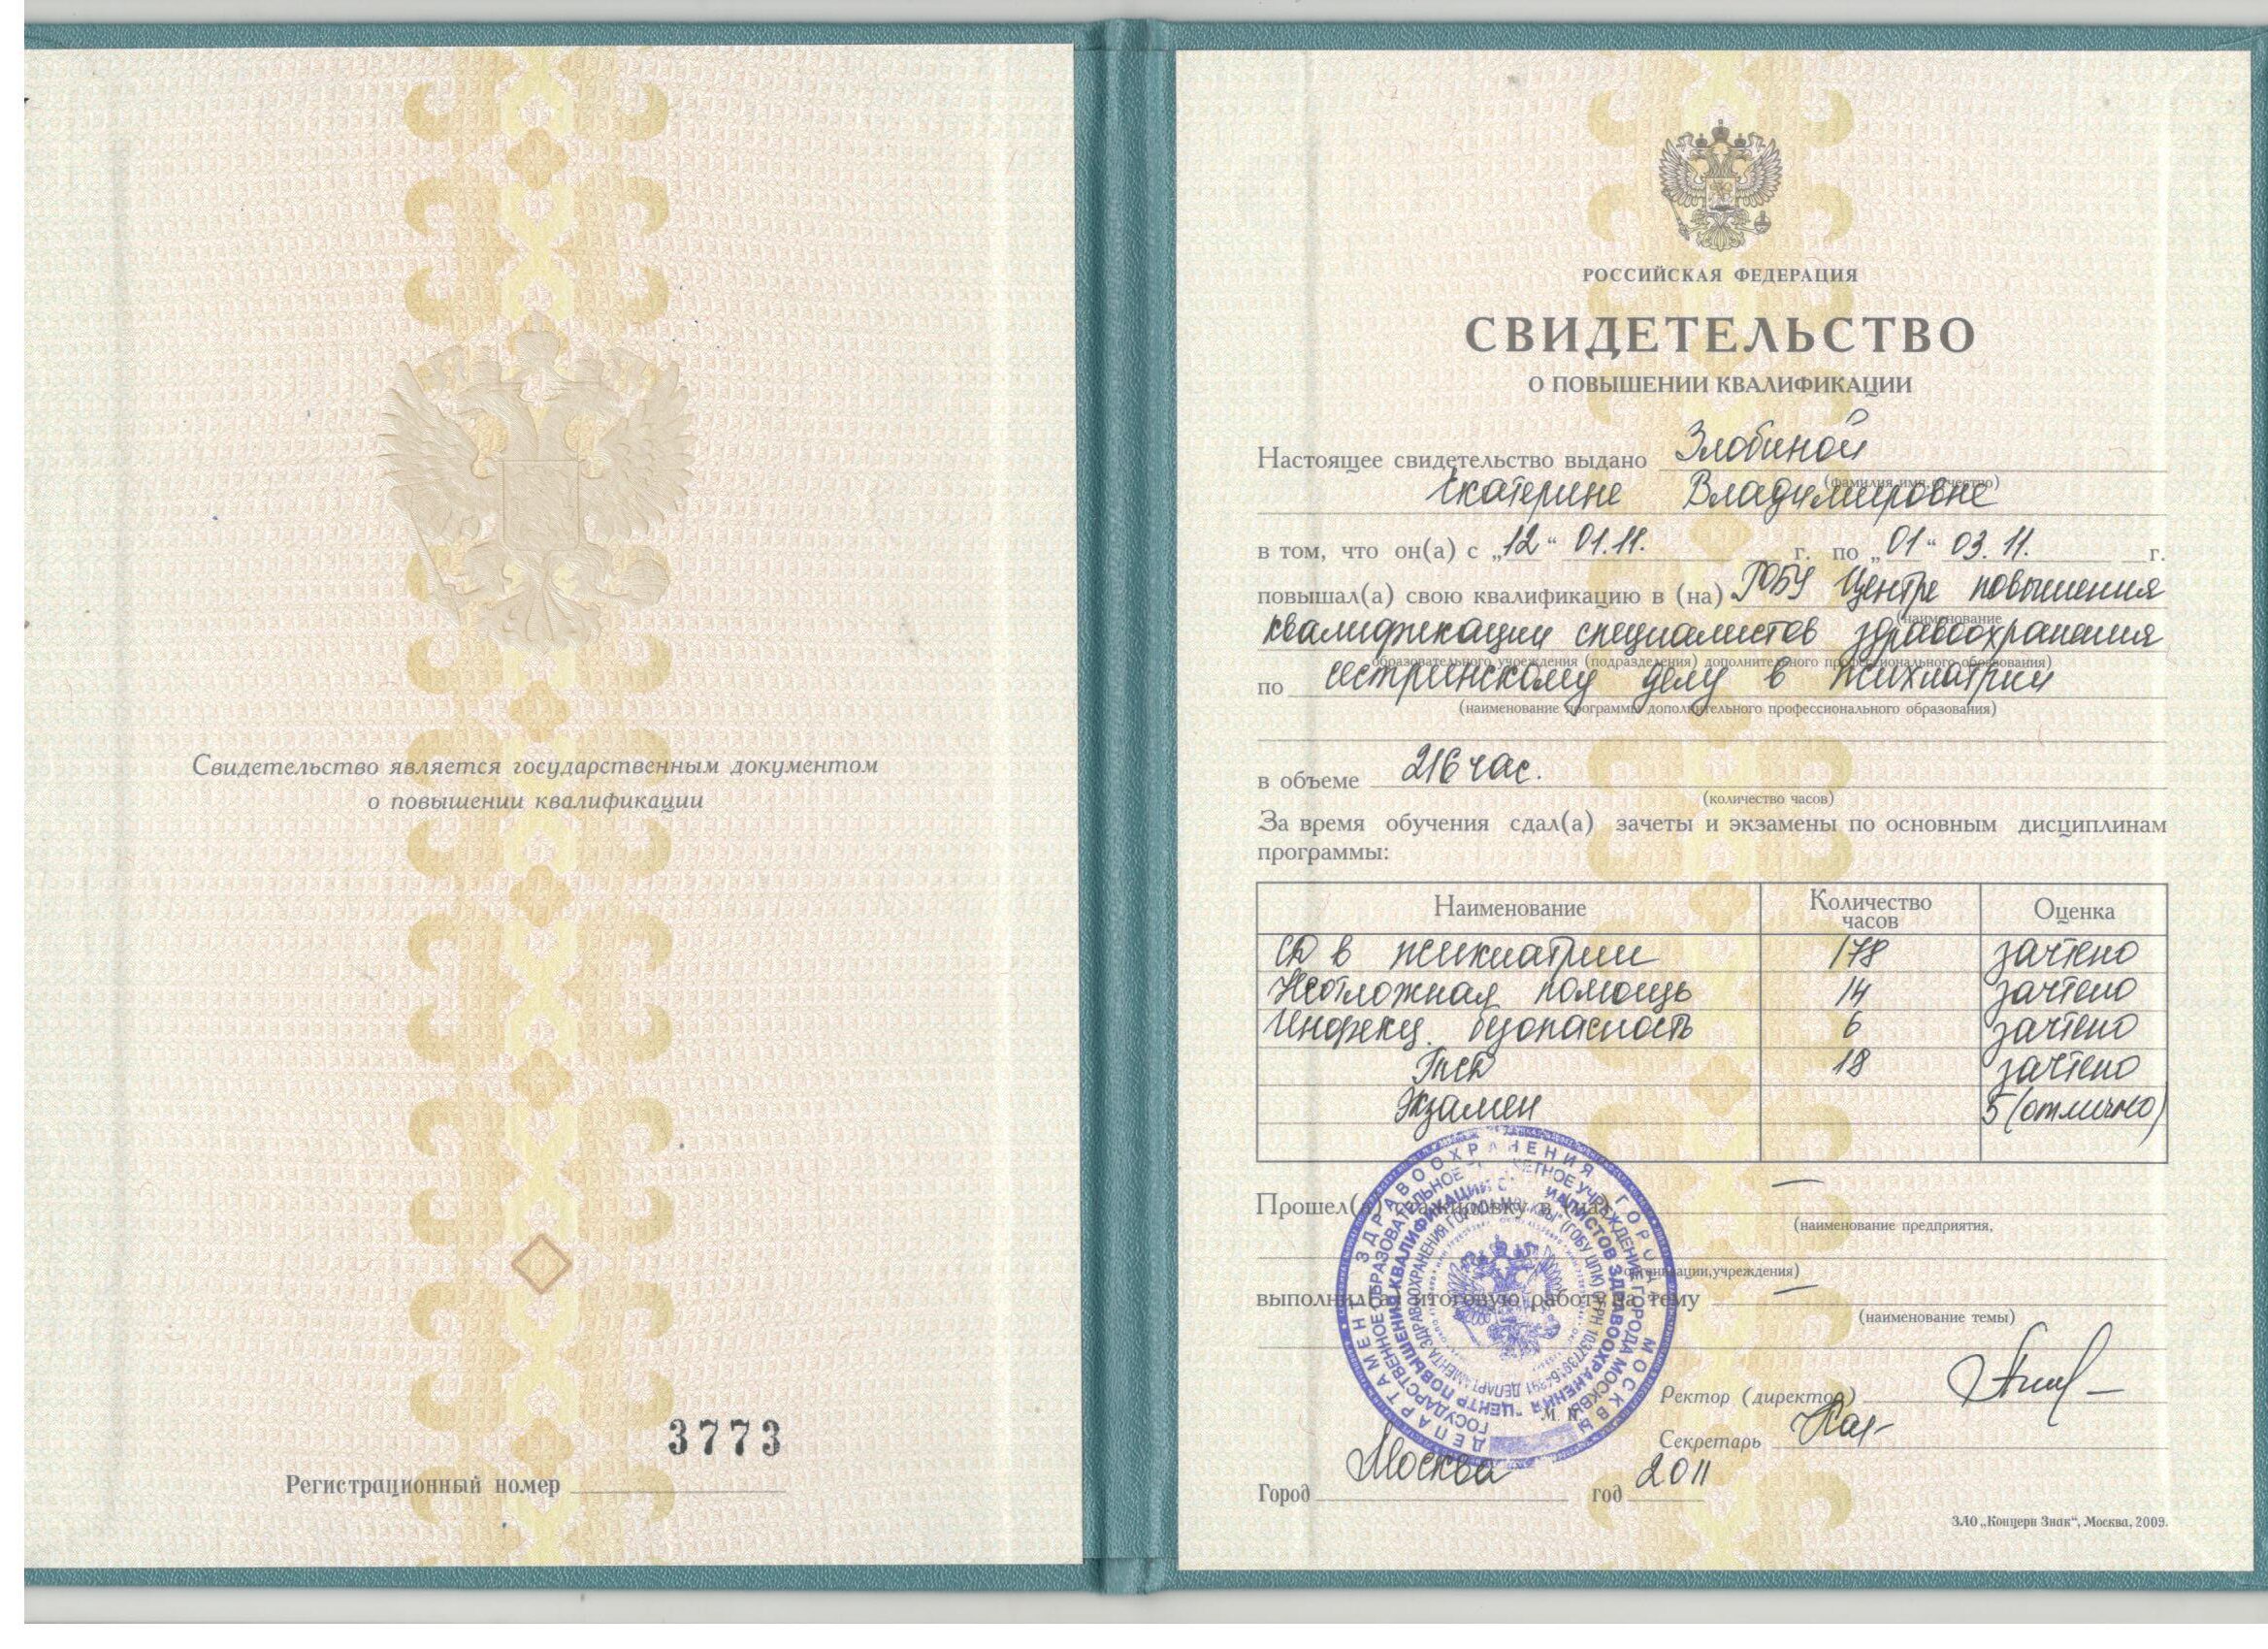 Диплом и сертификат  Злобина Екатерина Владимировна